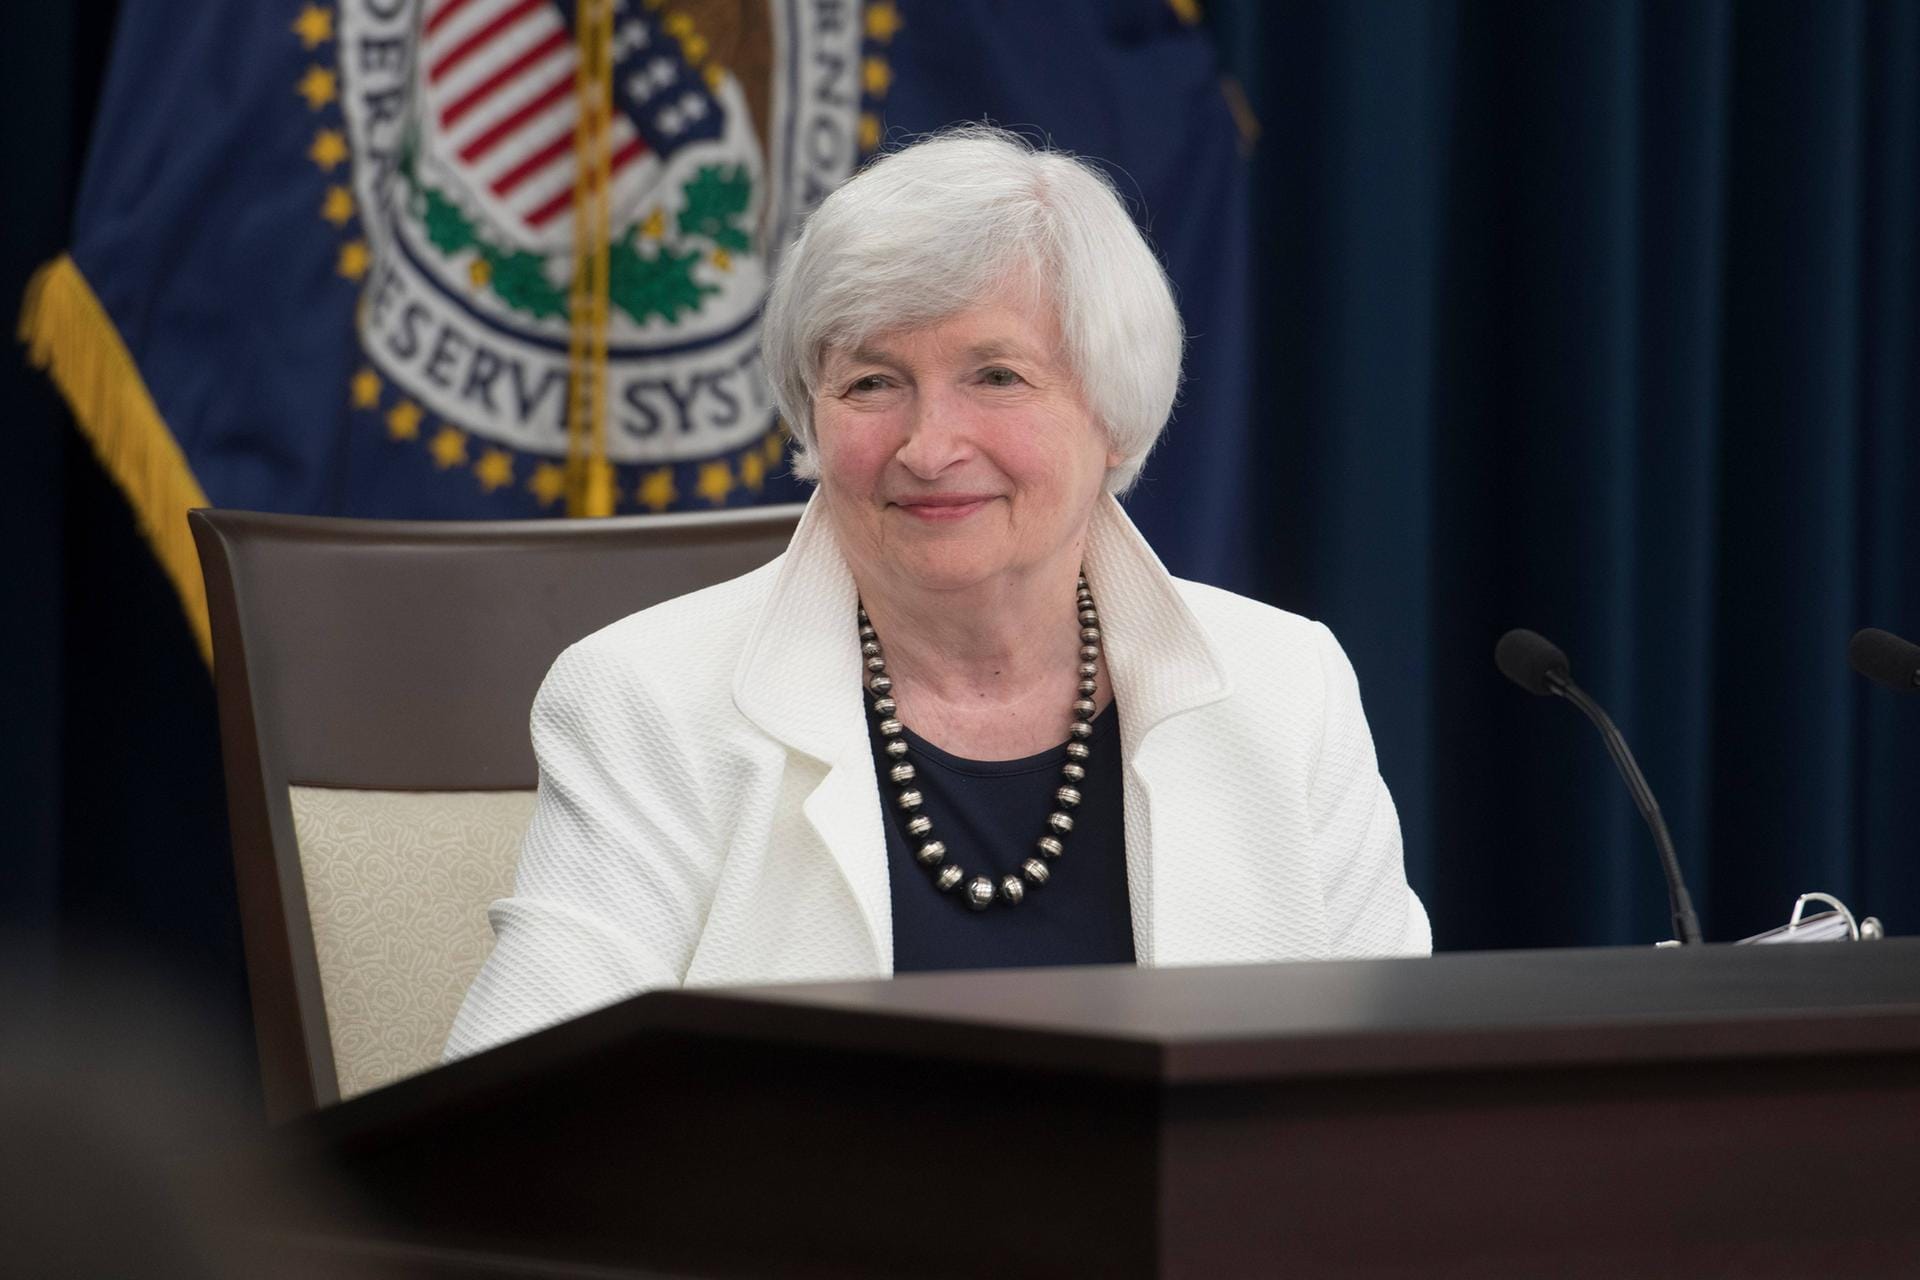 Janet Yellen: Als erste Frau der US-Geschichte soll die frühere Notenbankchefin Janet Yellen die Spitze des mächtigen Finanzministeriums übernehmen. Die 74-Jährige hatte schon 2014 Geschichte geschrieben, als sie als erste Frau die Leitung der Notenbank Fed übernahm.